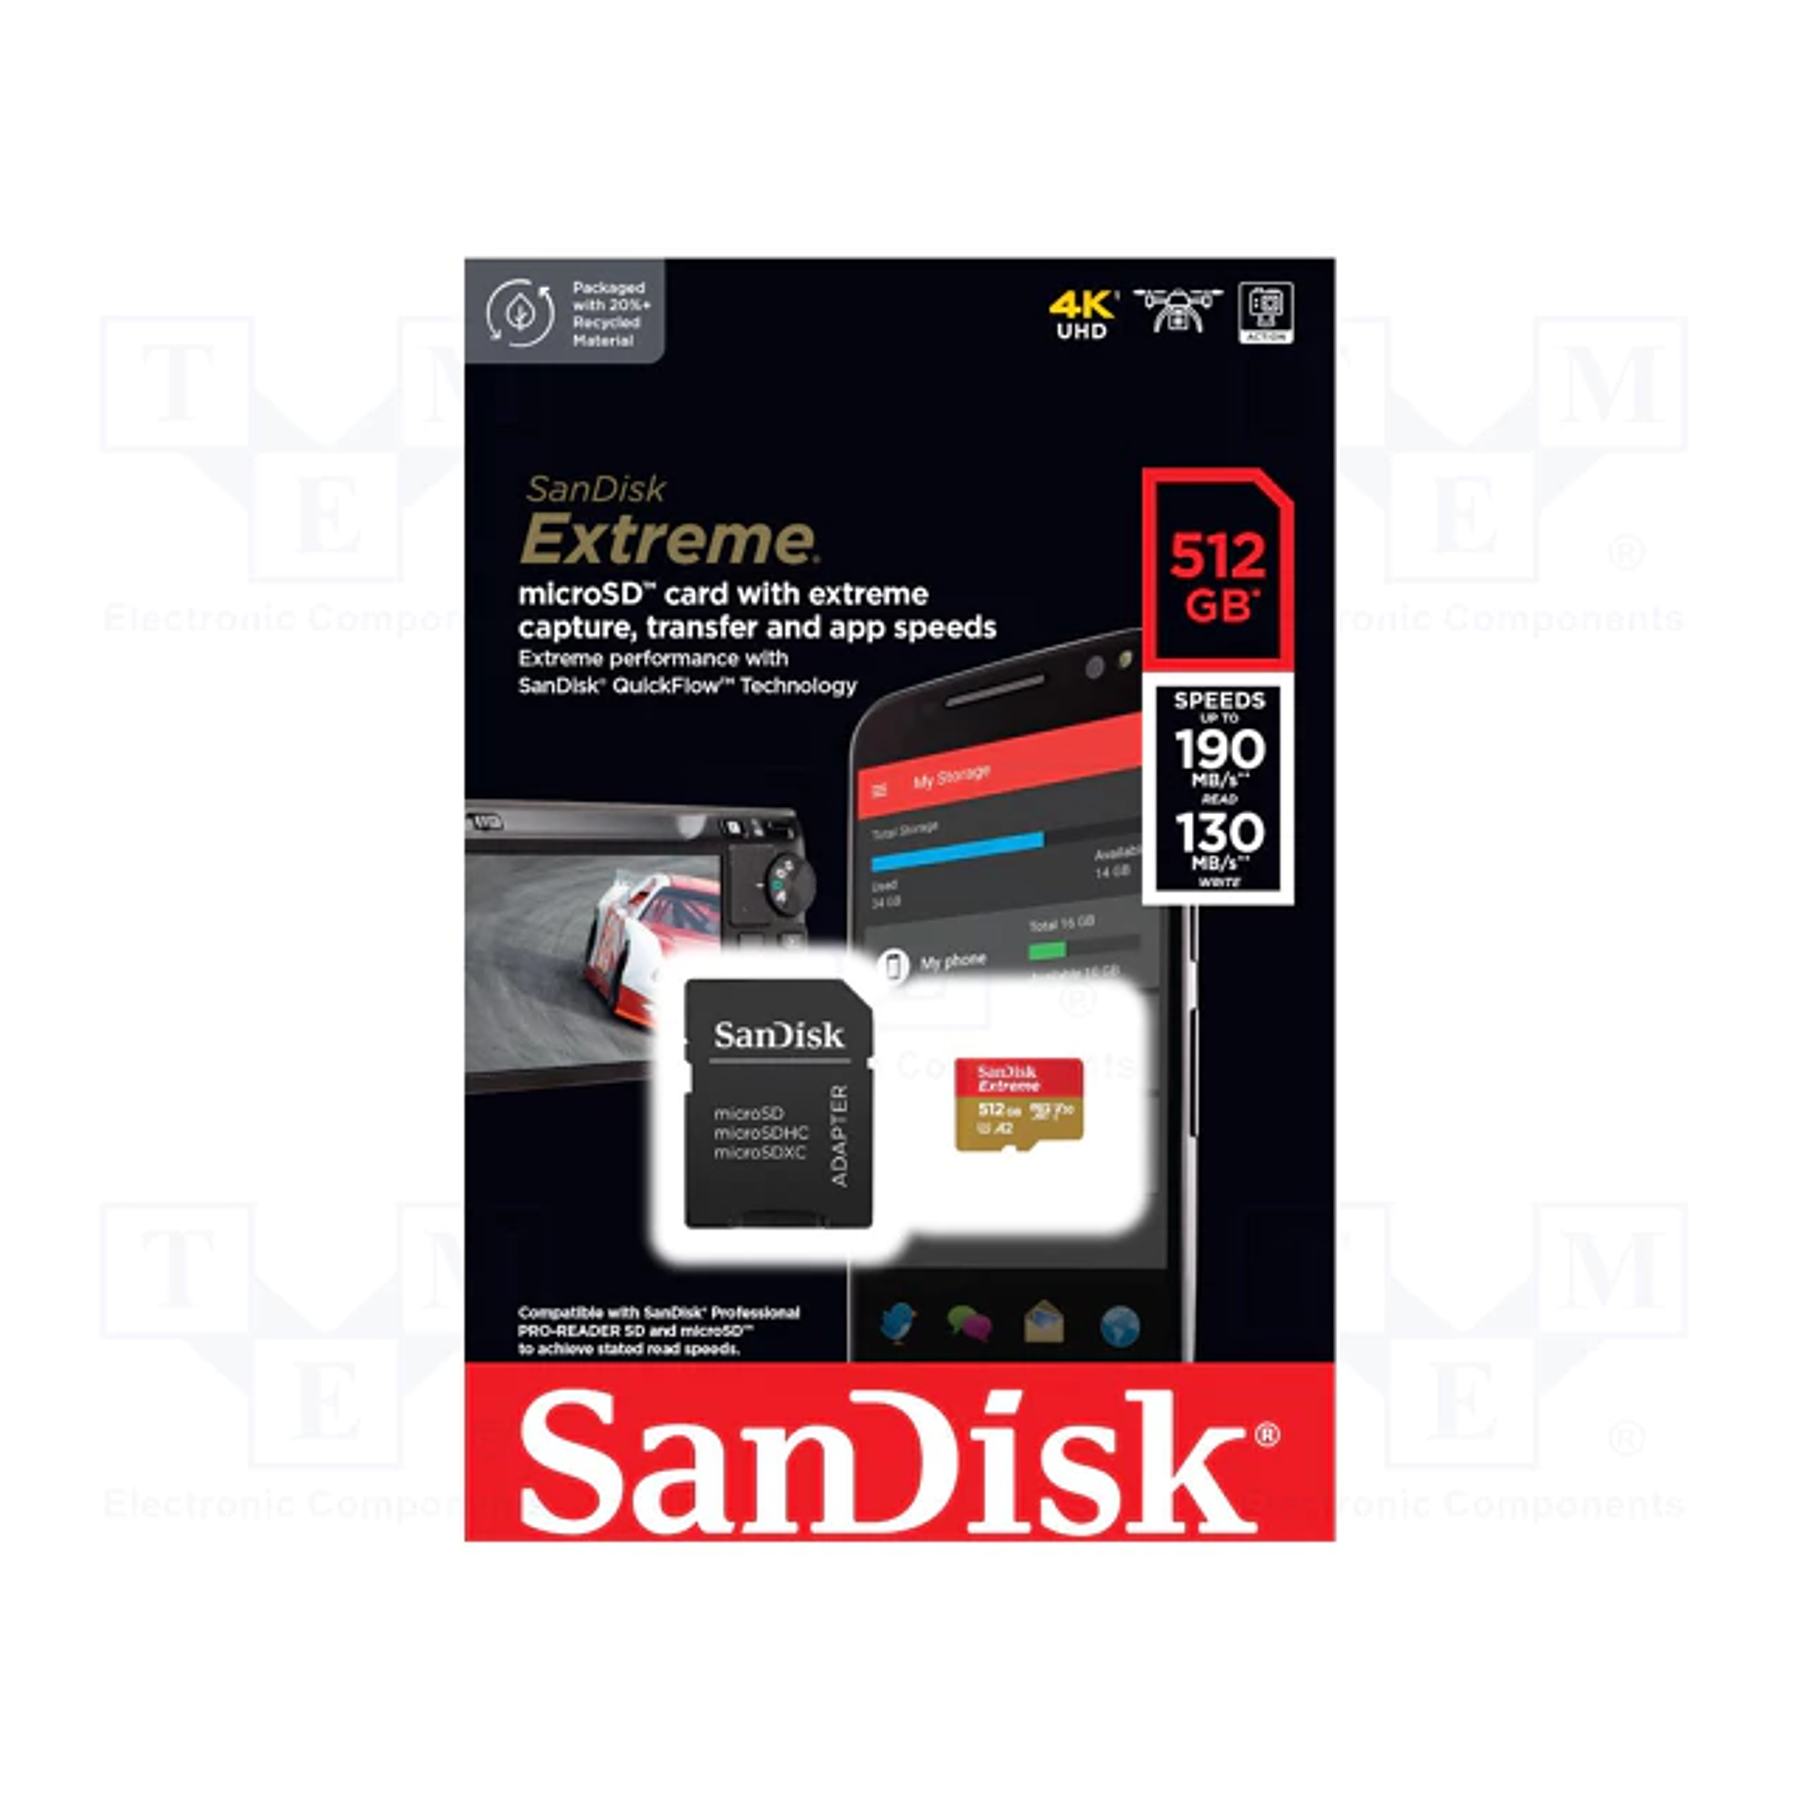 TARJETA DE MEMORIA SANDISK MICROSD 256GB EXTREME MODELO # SDSQXAV-512G